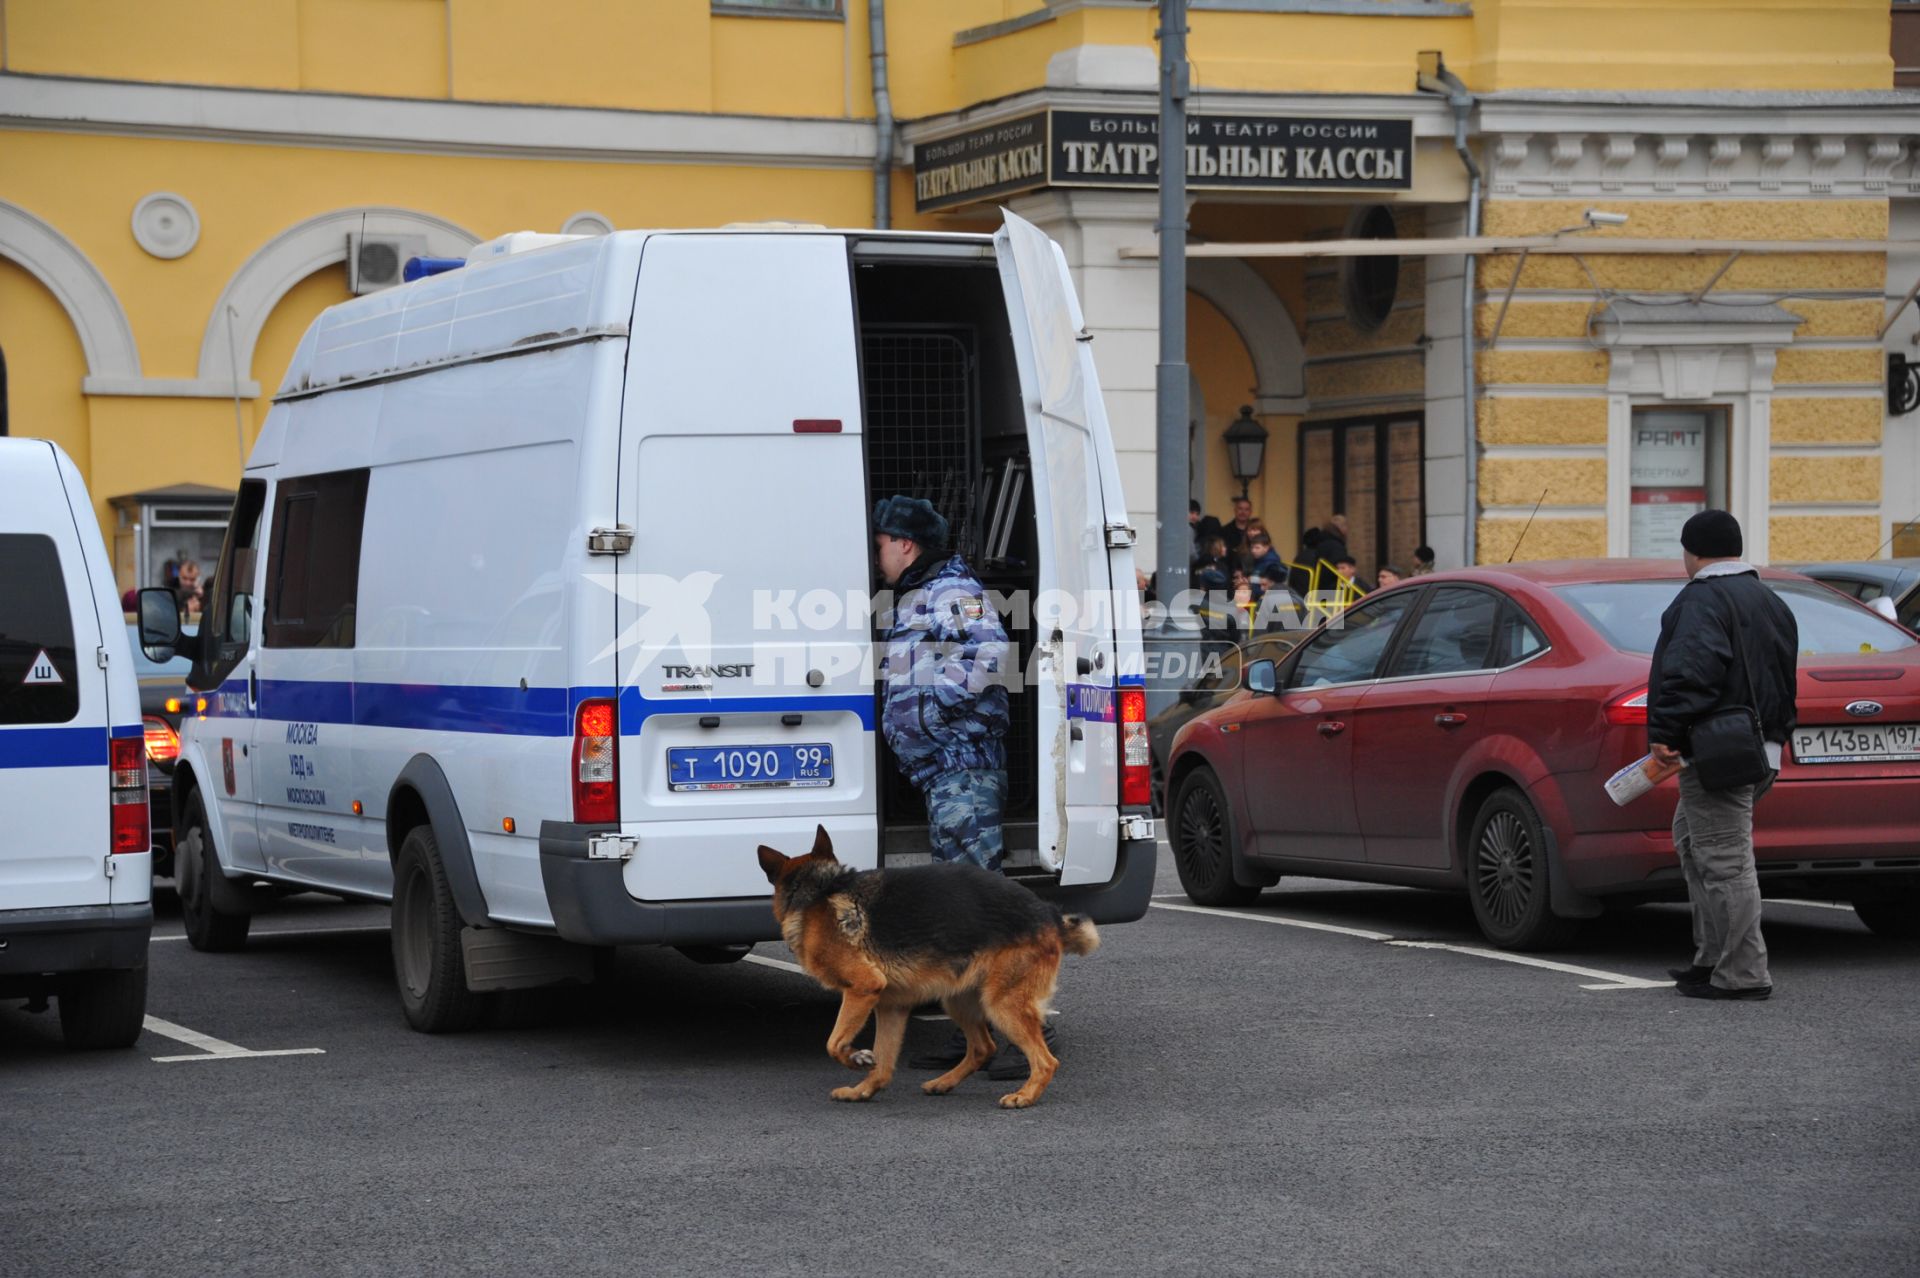 Продажа билетов в ГАБТ. На снимке: сотрудник полиции со служебной собакой у театральных касс. 31 октября 2011 года.